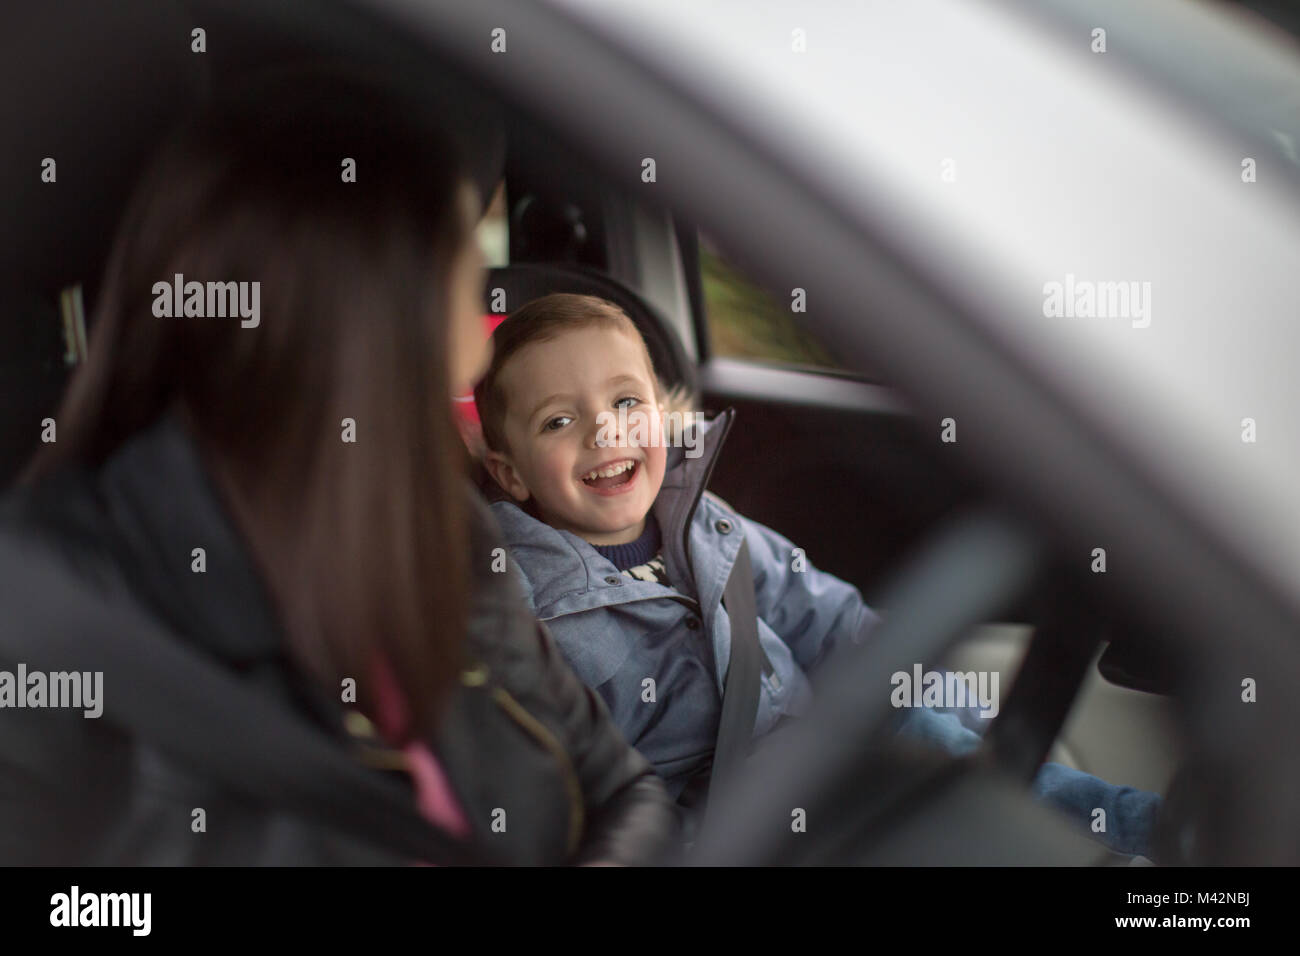 Niño sonriendo a la madre coches Road Trip. Foto de stock